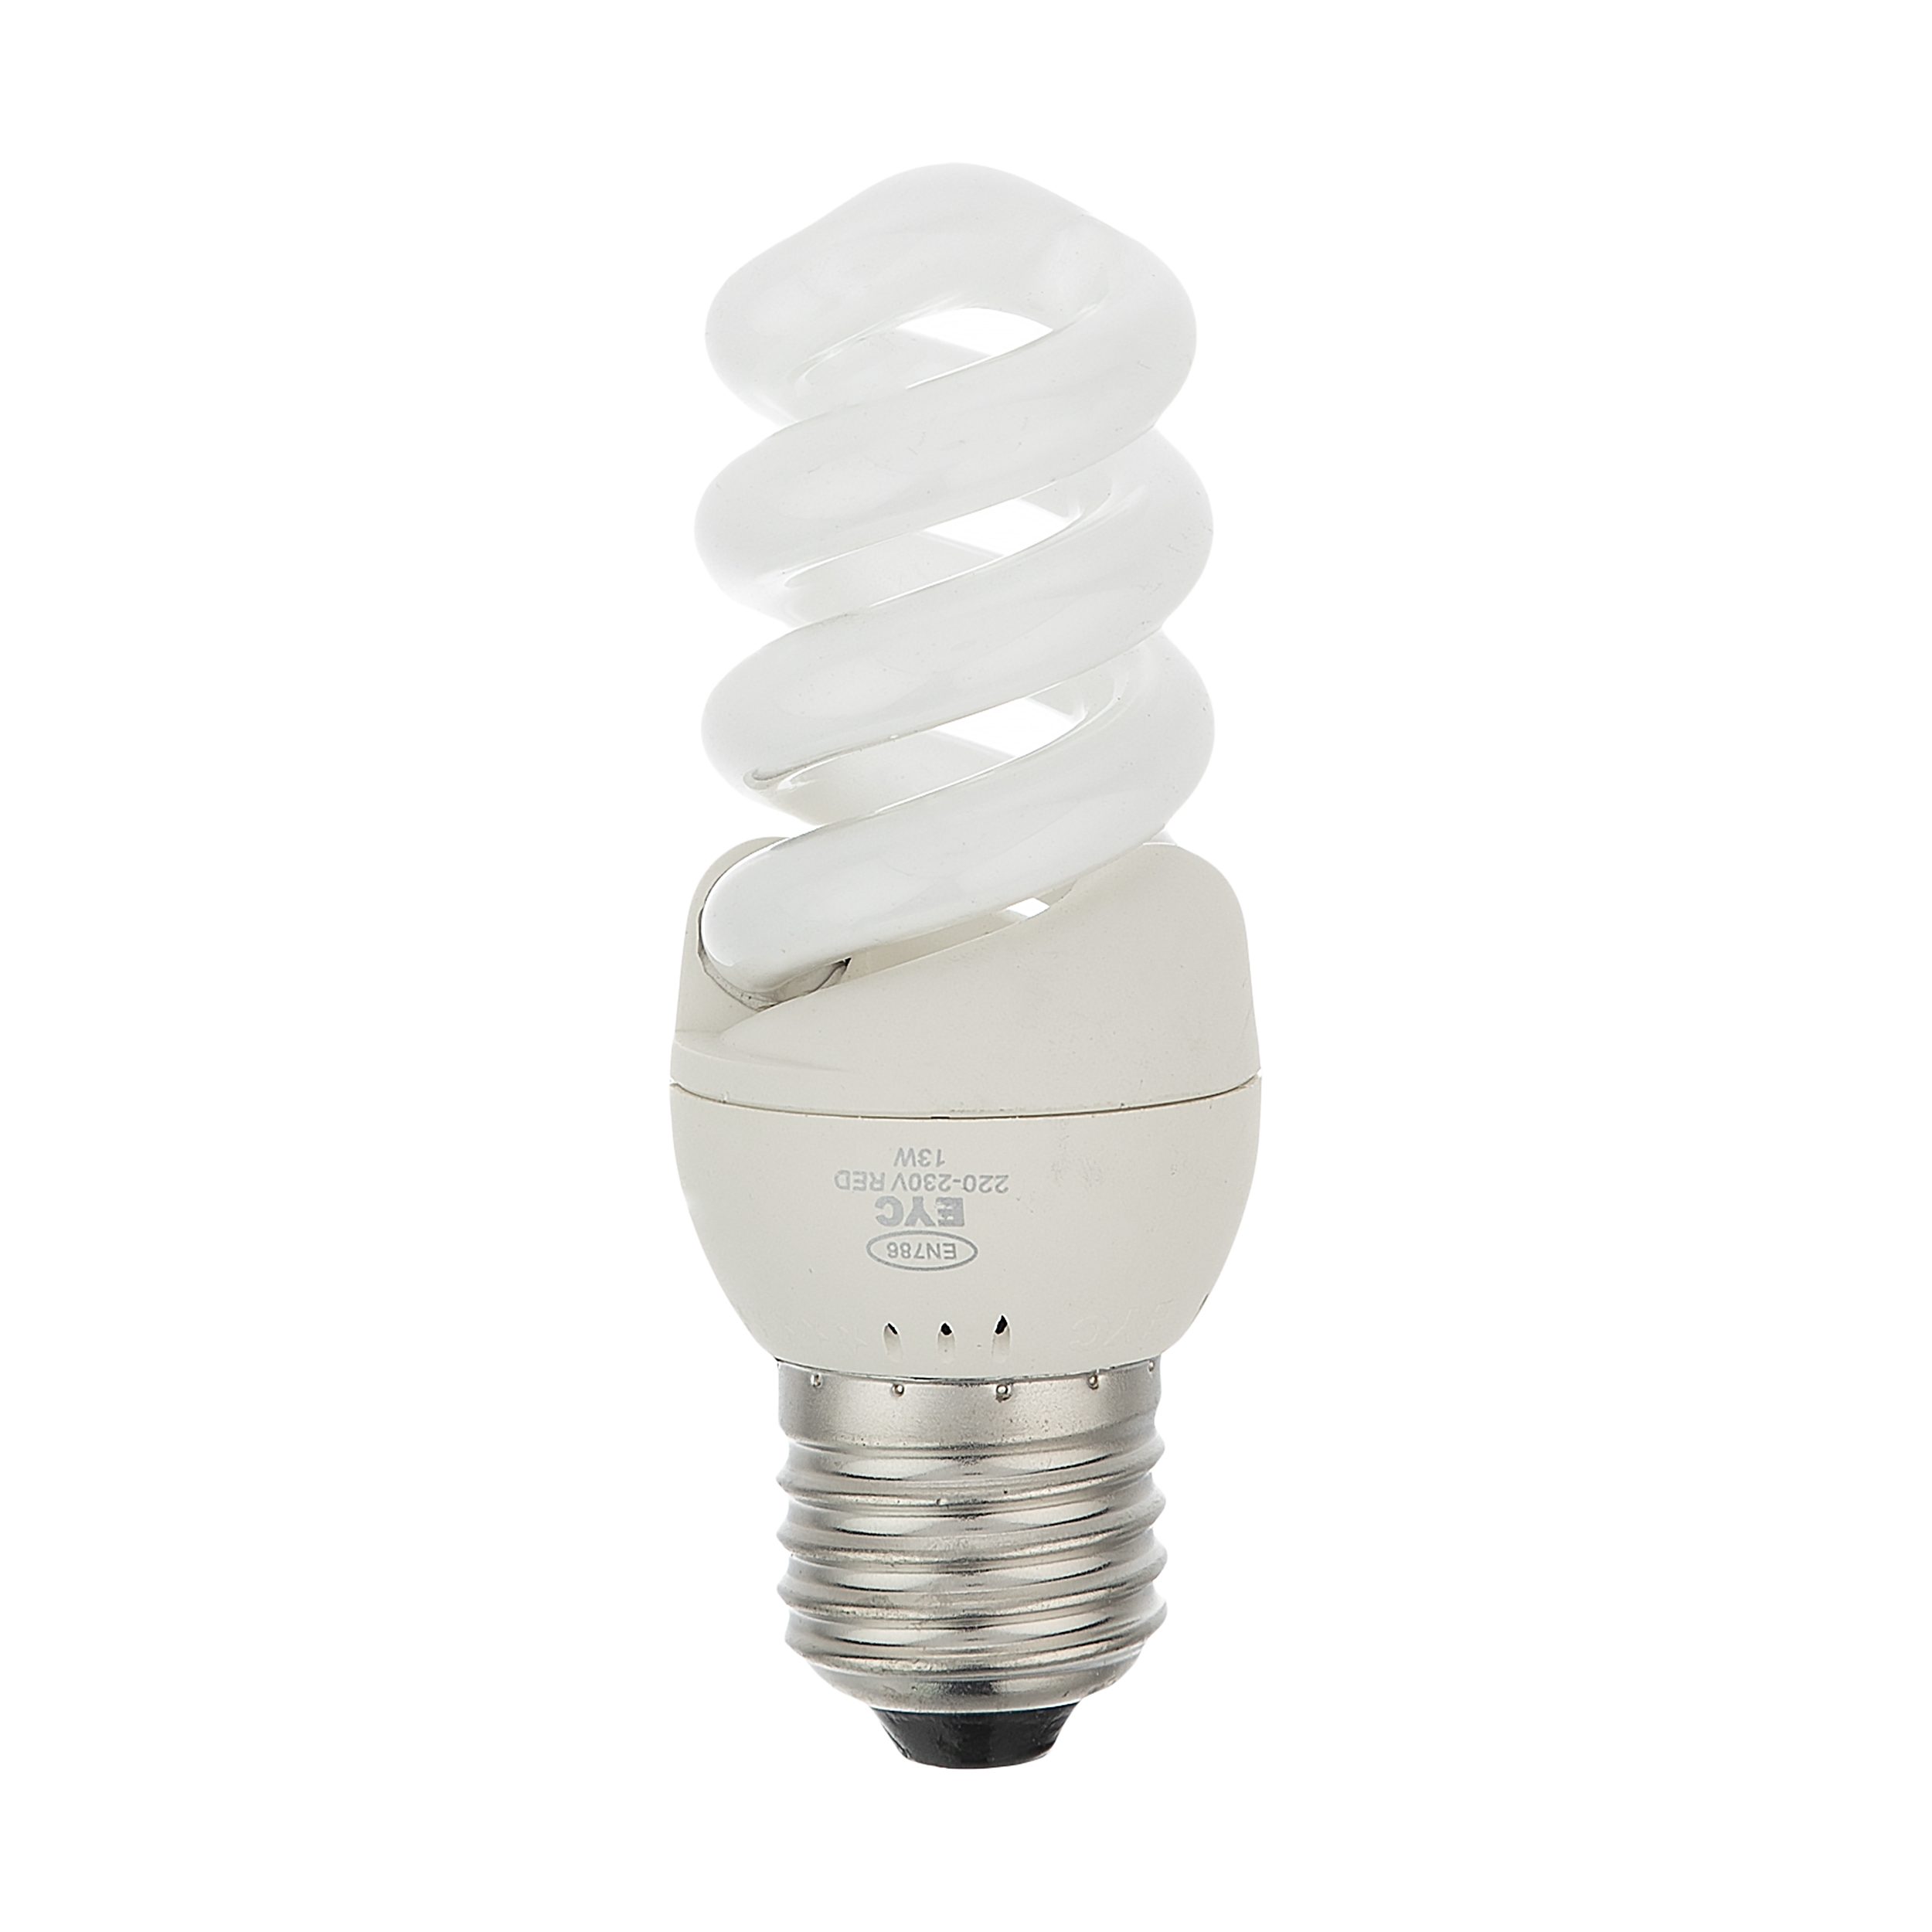 لامپ کم مصرف 13وات ای وای سی کد 65 پایه E27